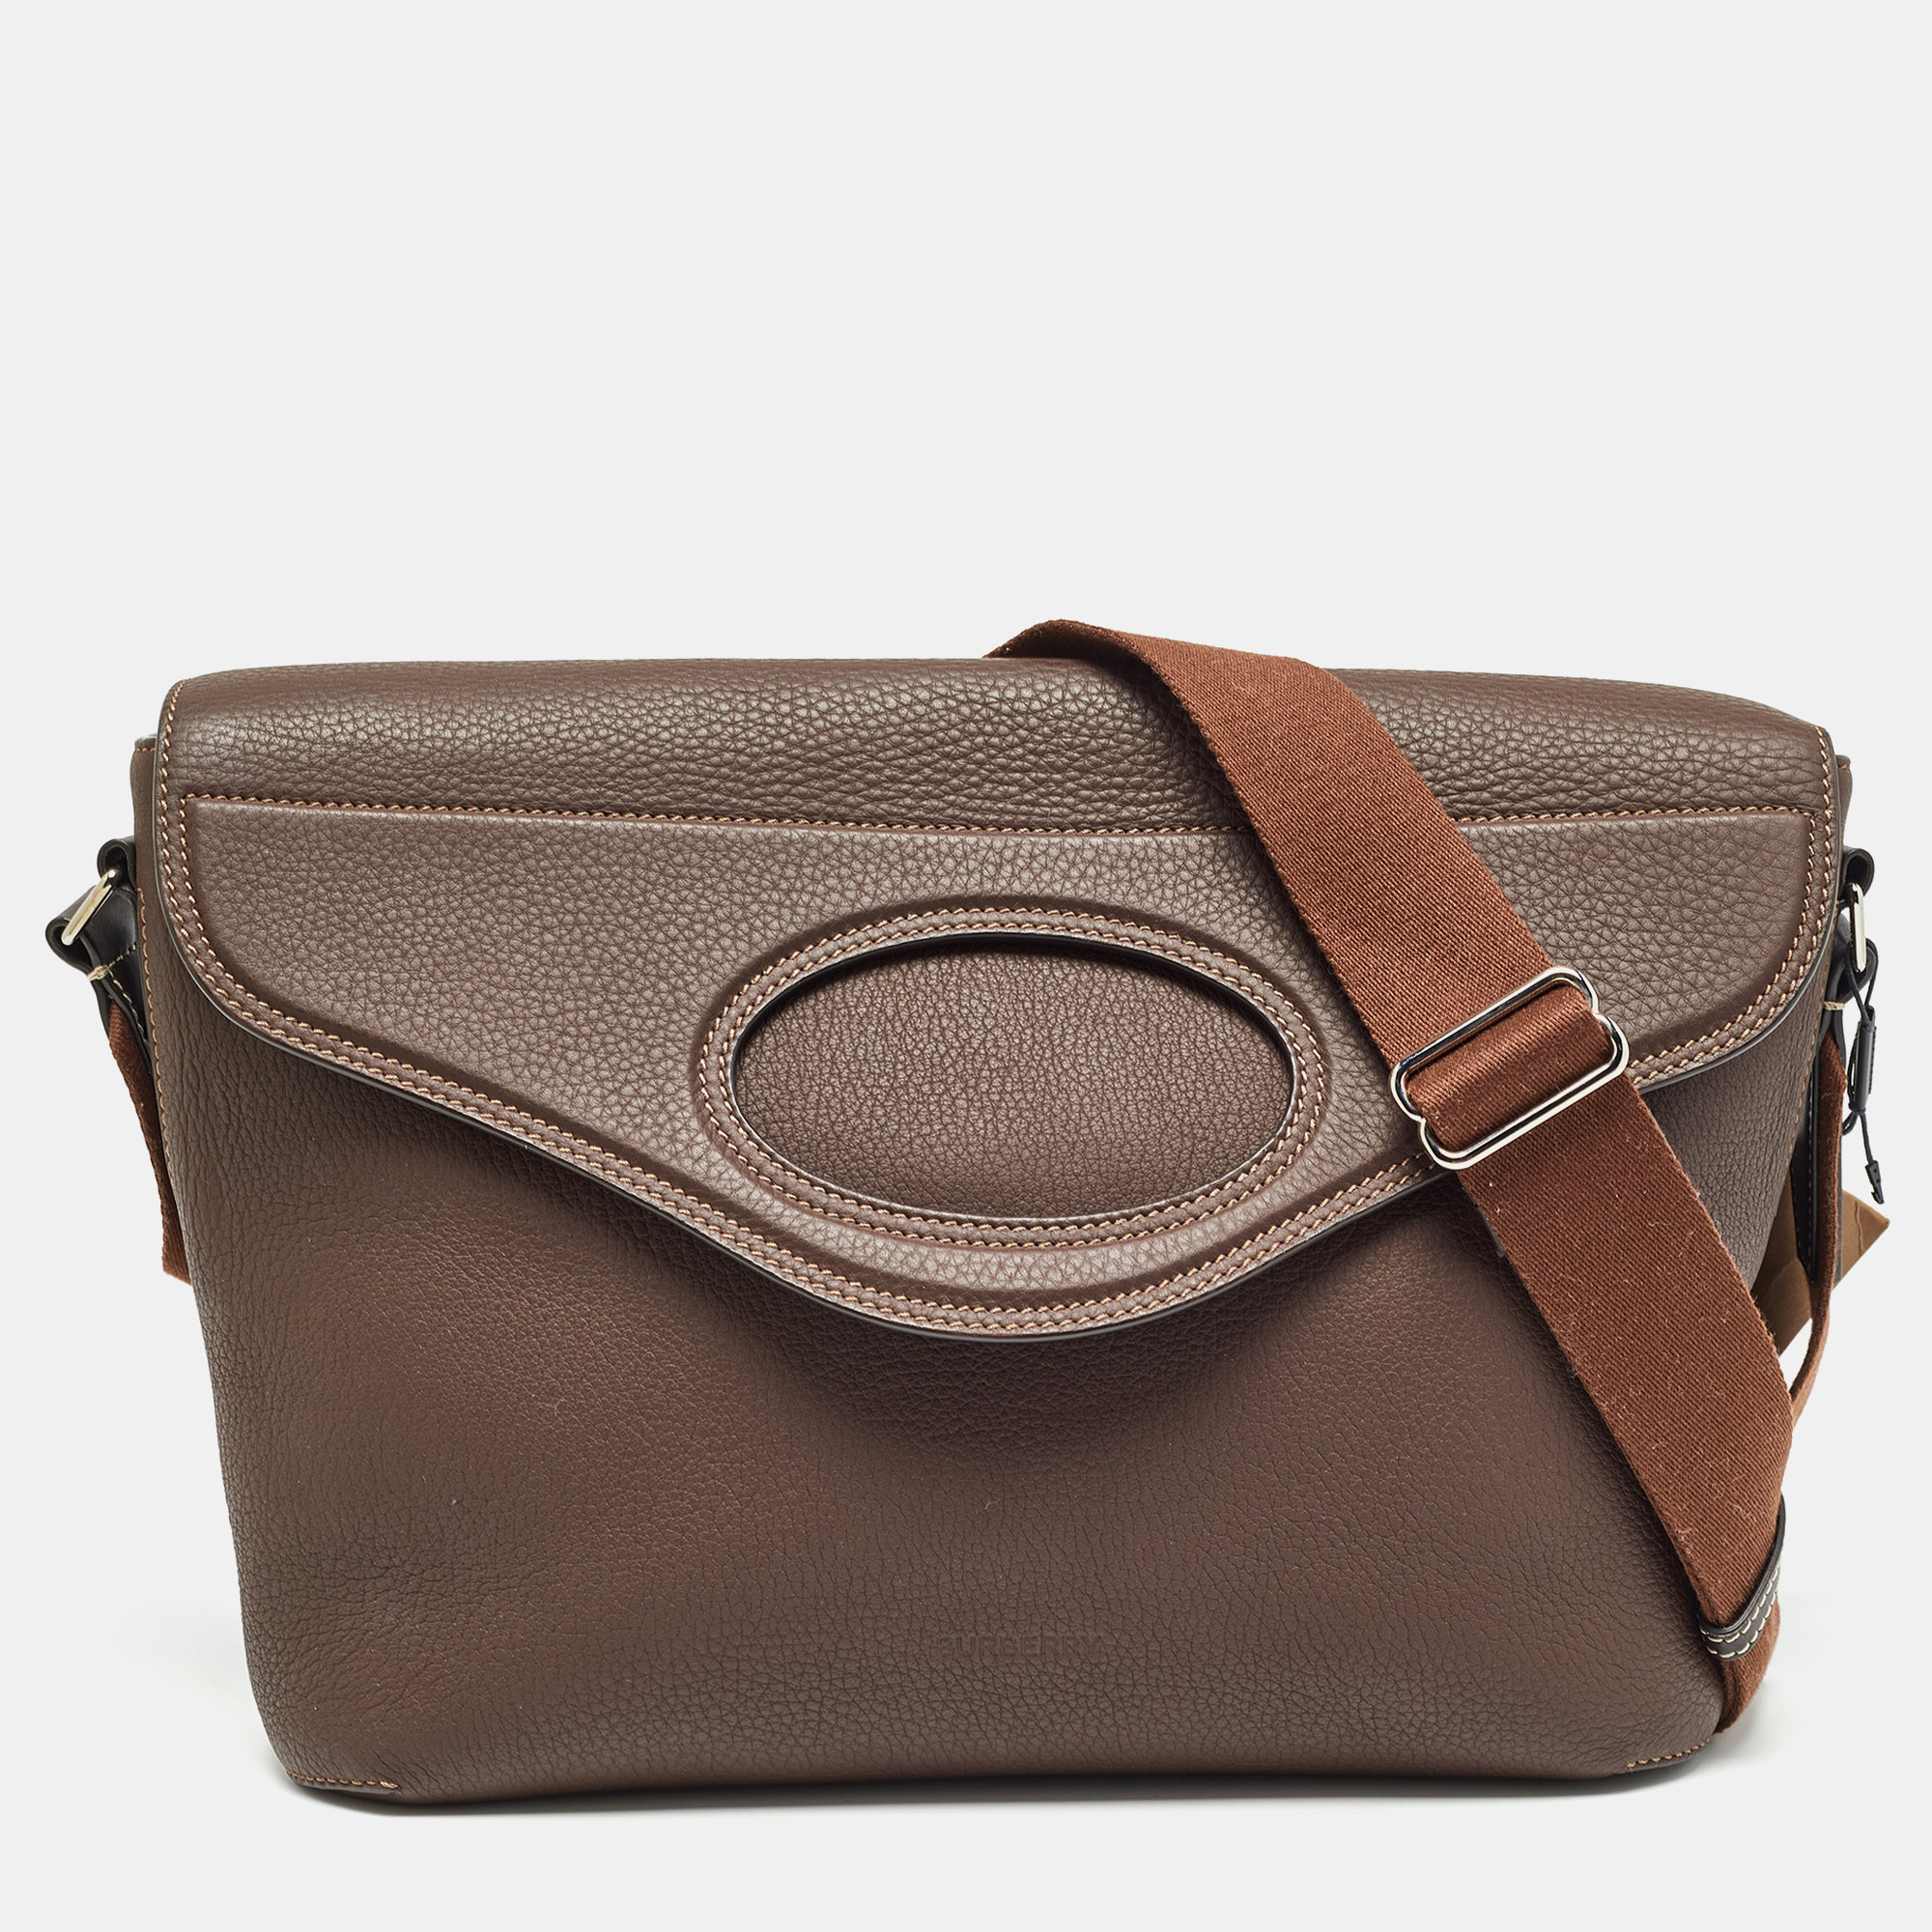 Burberry dark brown leather large pocket messenger bag